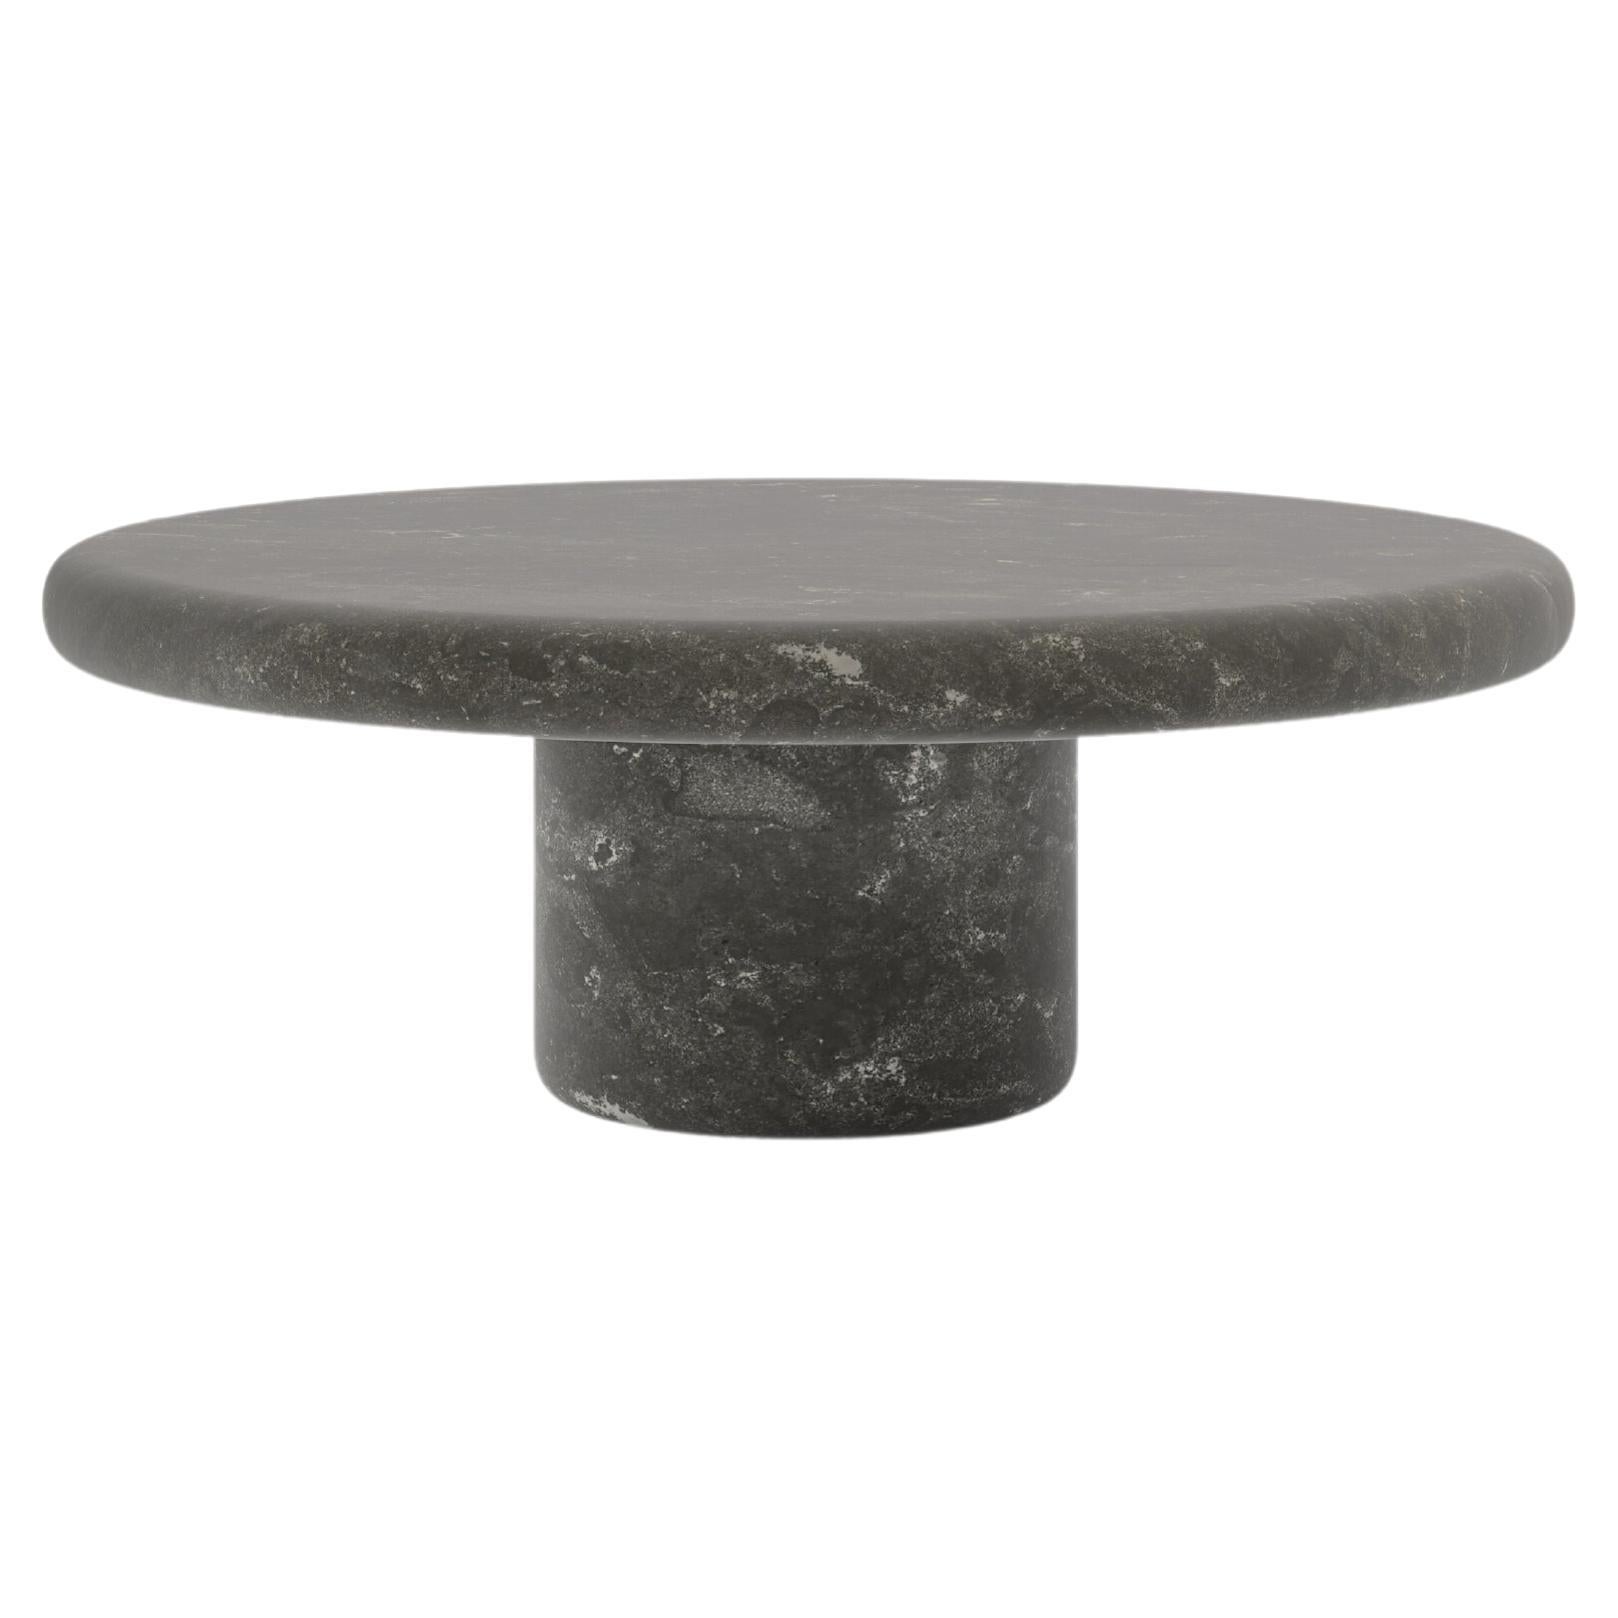 FORM(LA) Luna Round Coffee Table 42”L x 42”W x 15”H Nero Petite Granite For Sale